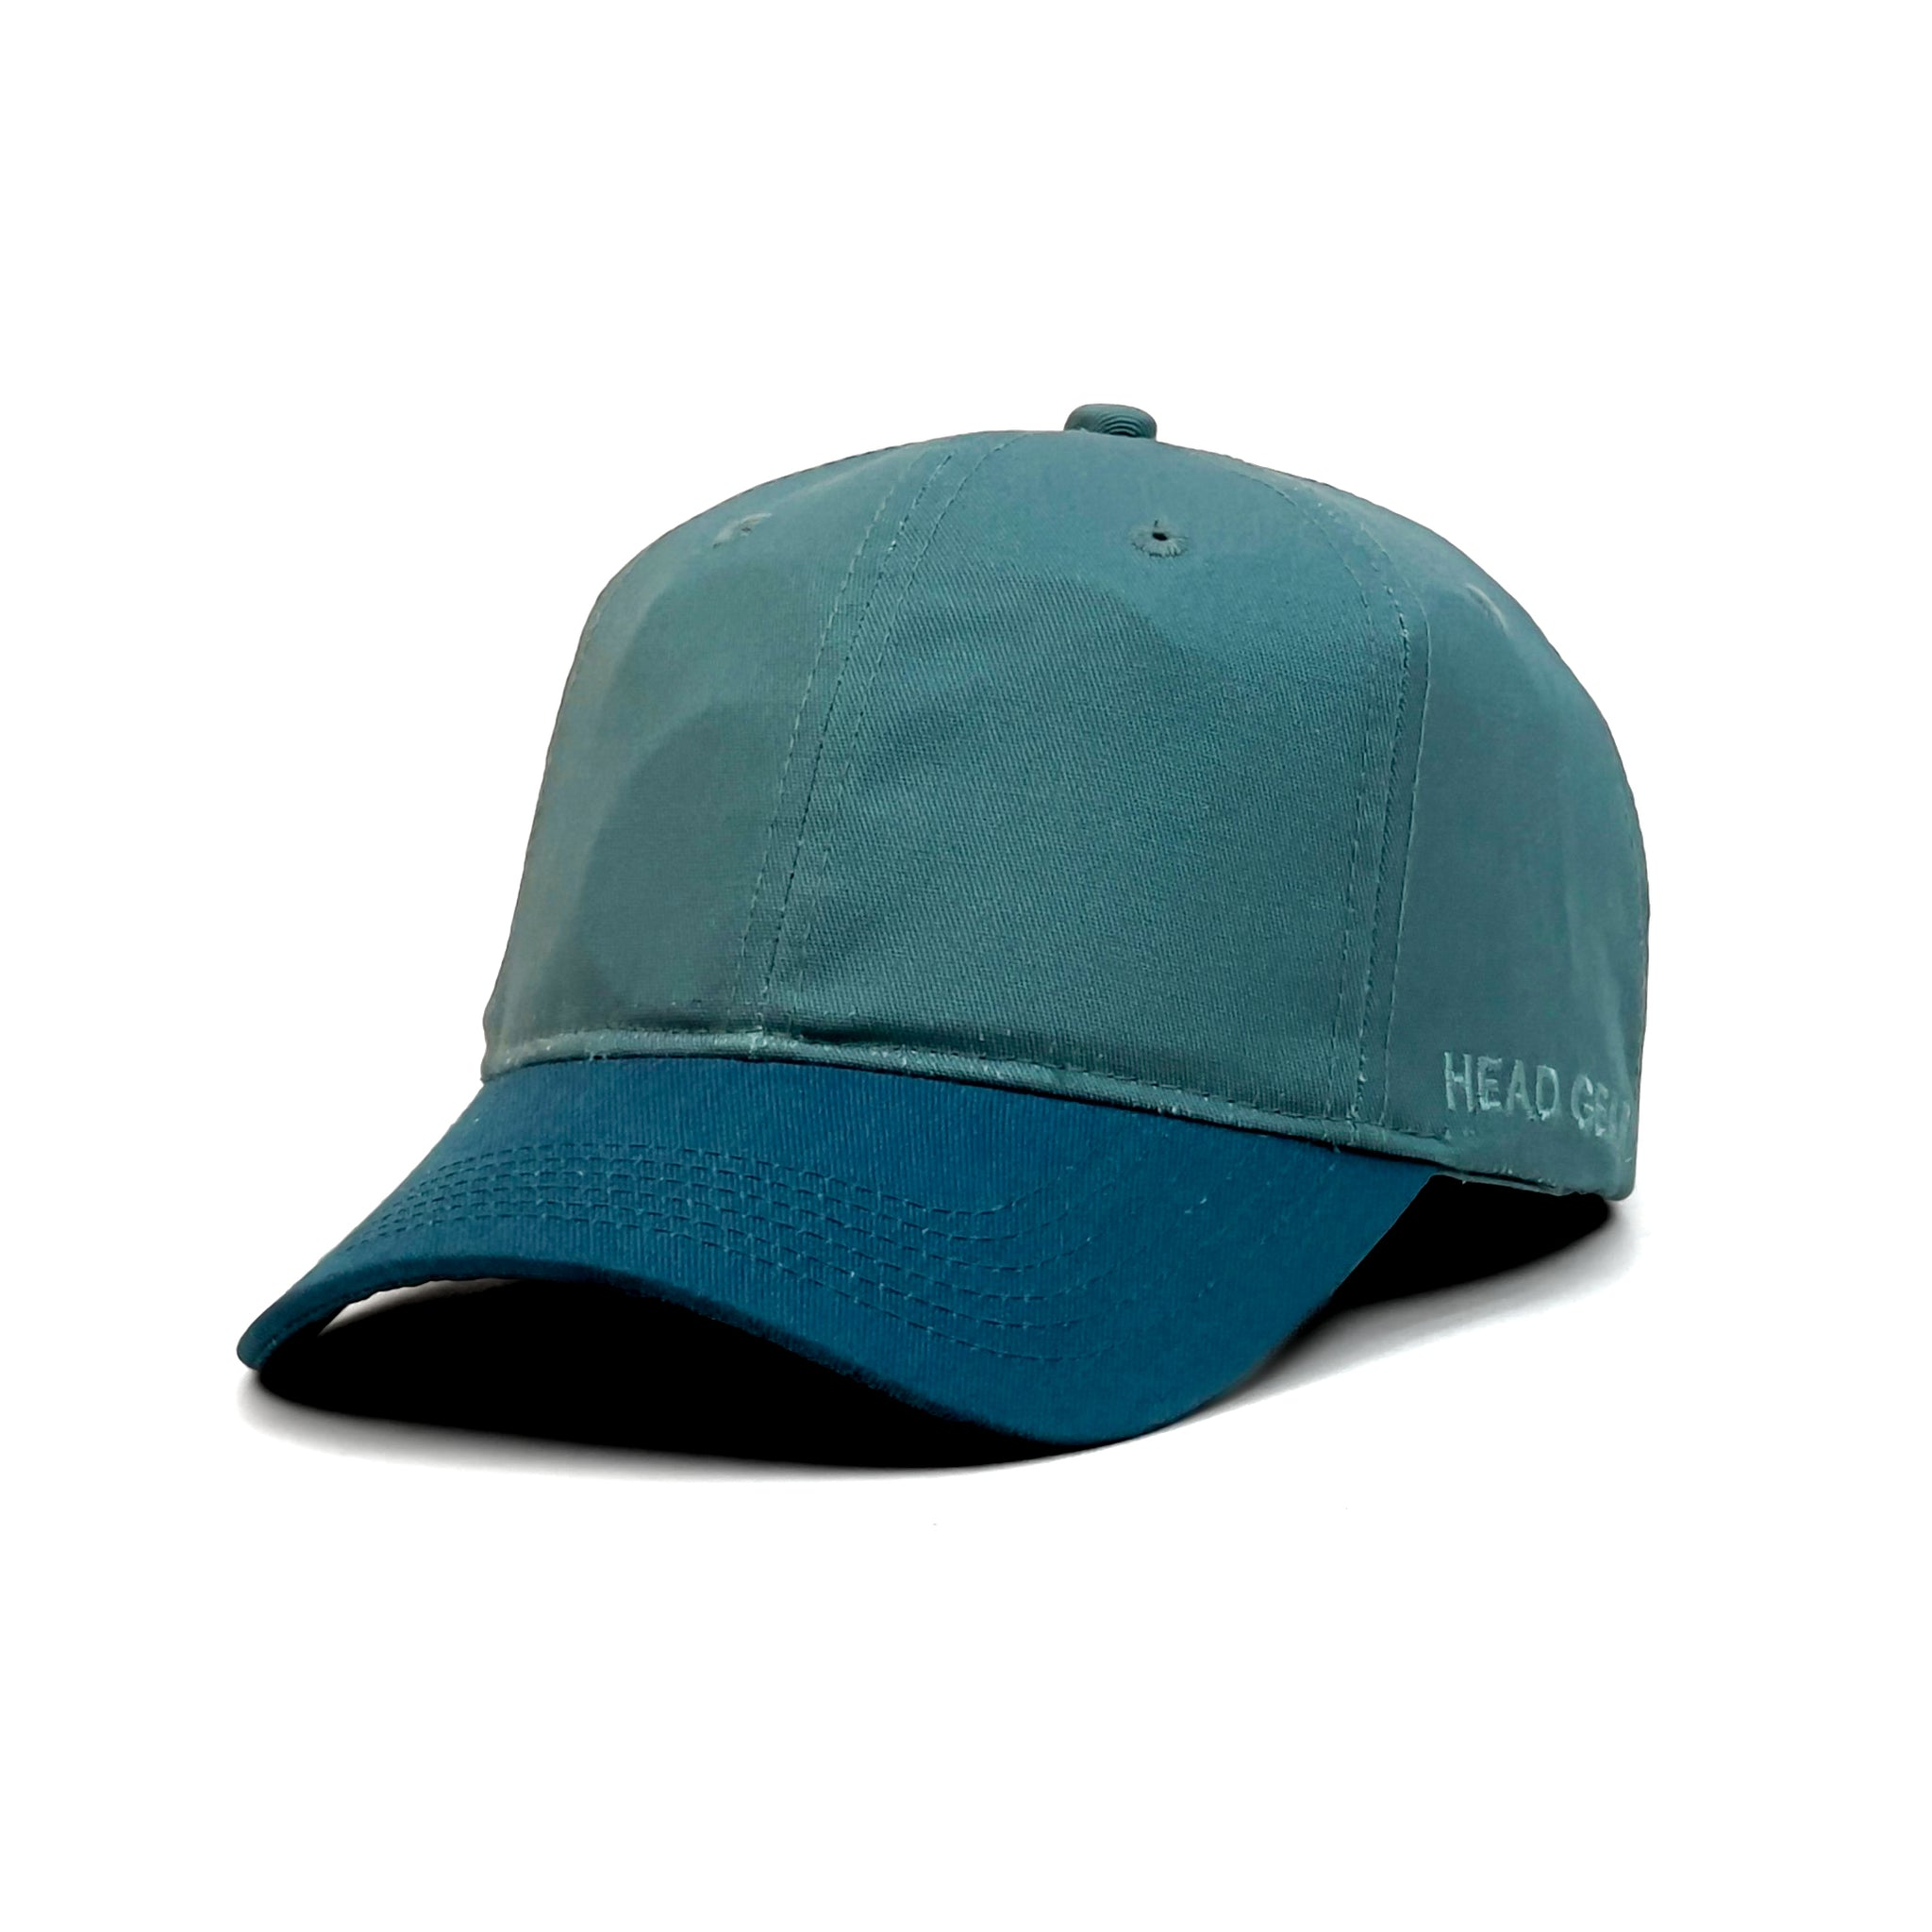 HEAD GEAR BOTTLE GREEN BLUE DUAL TONE CAP